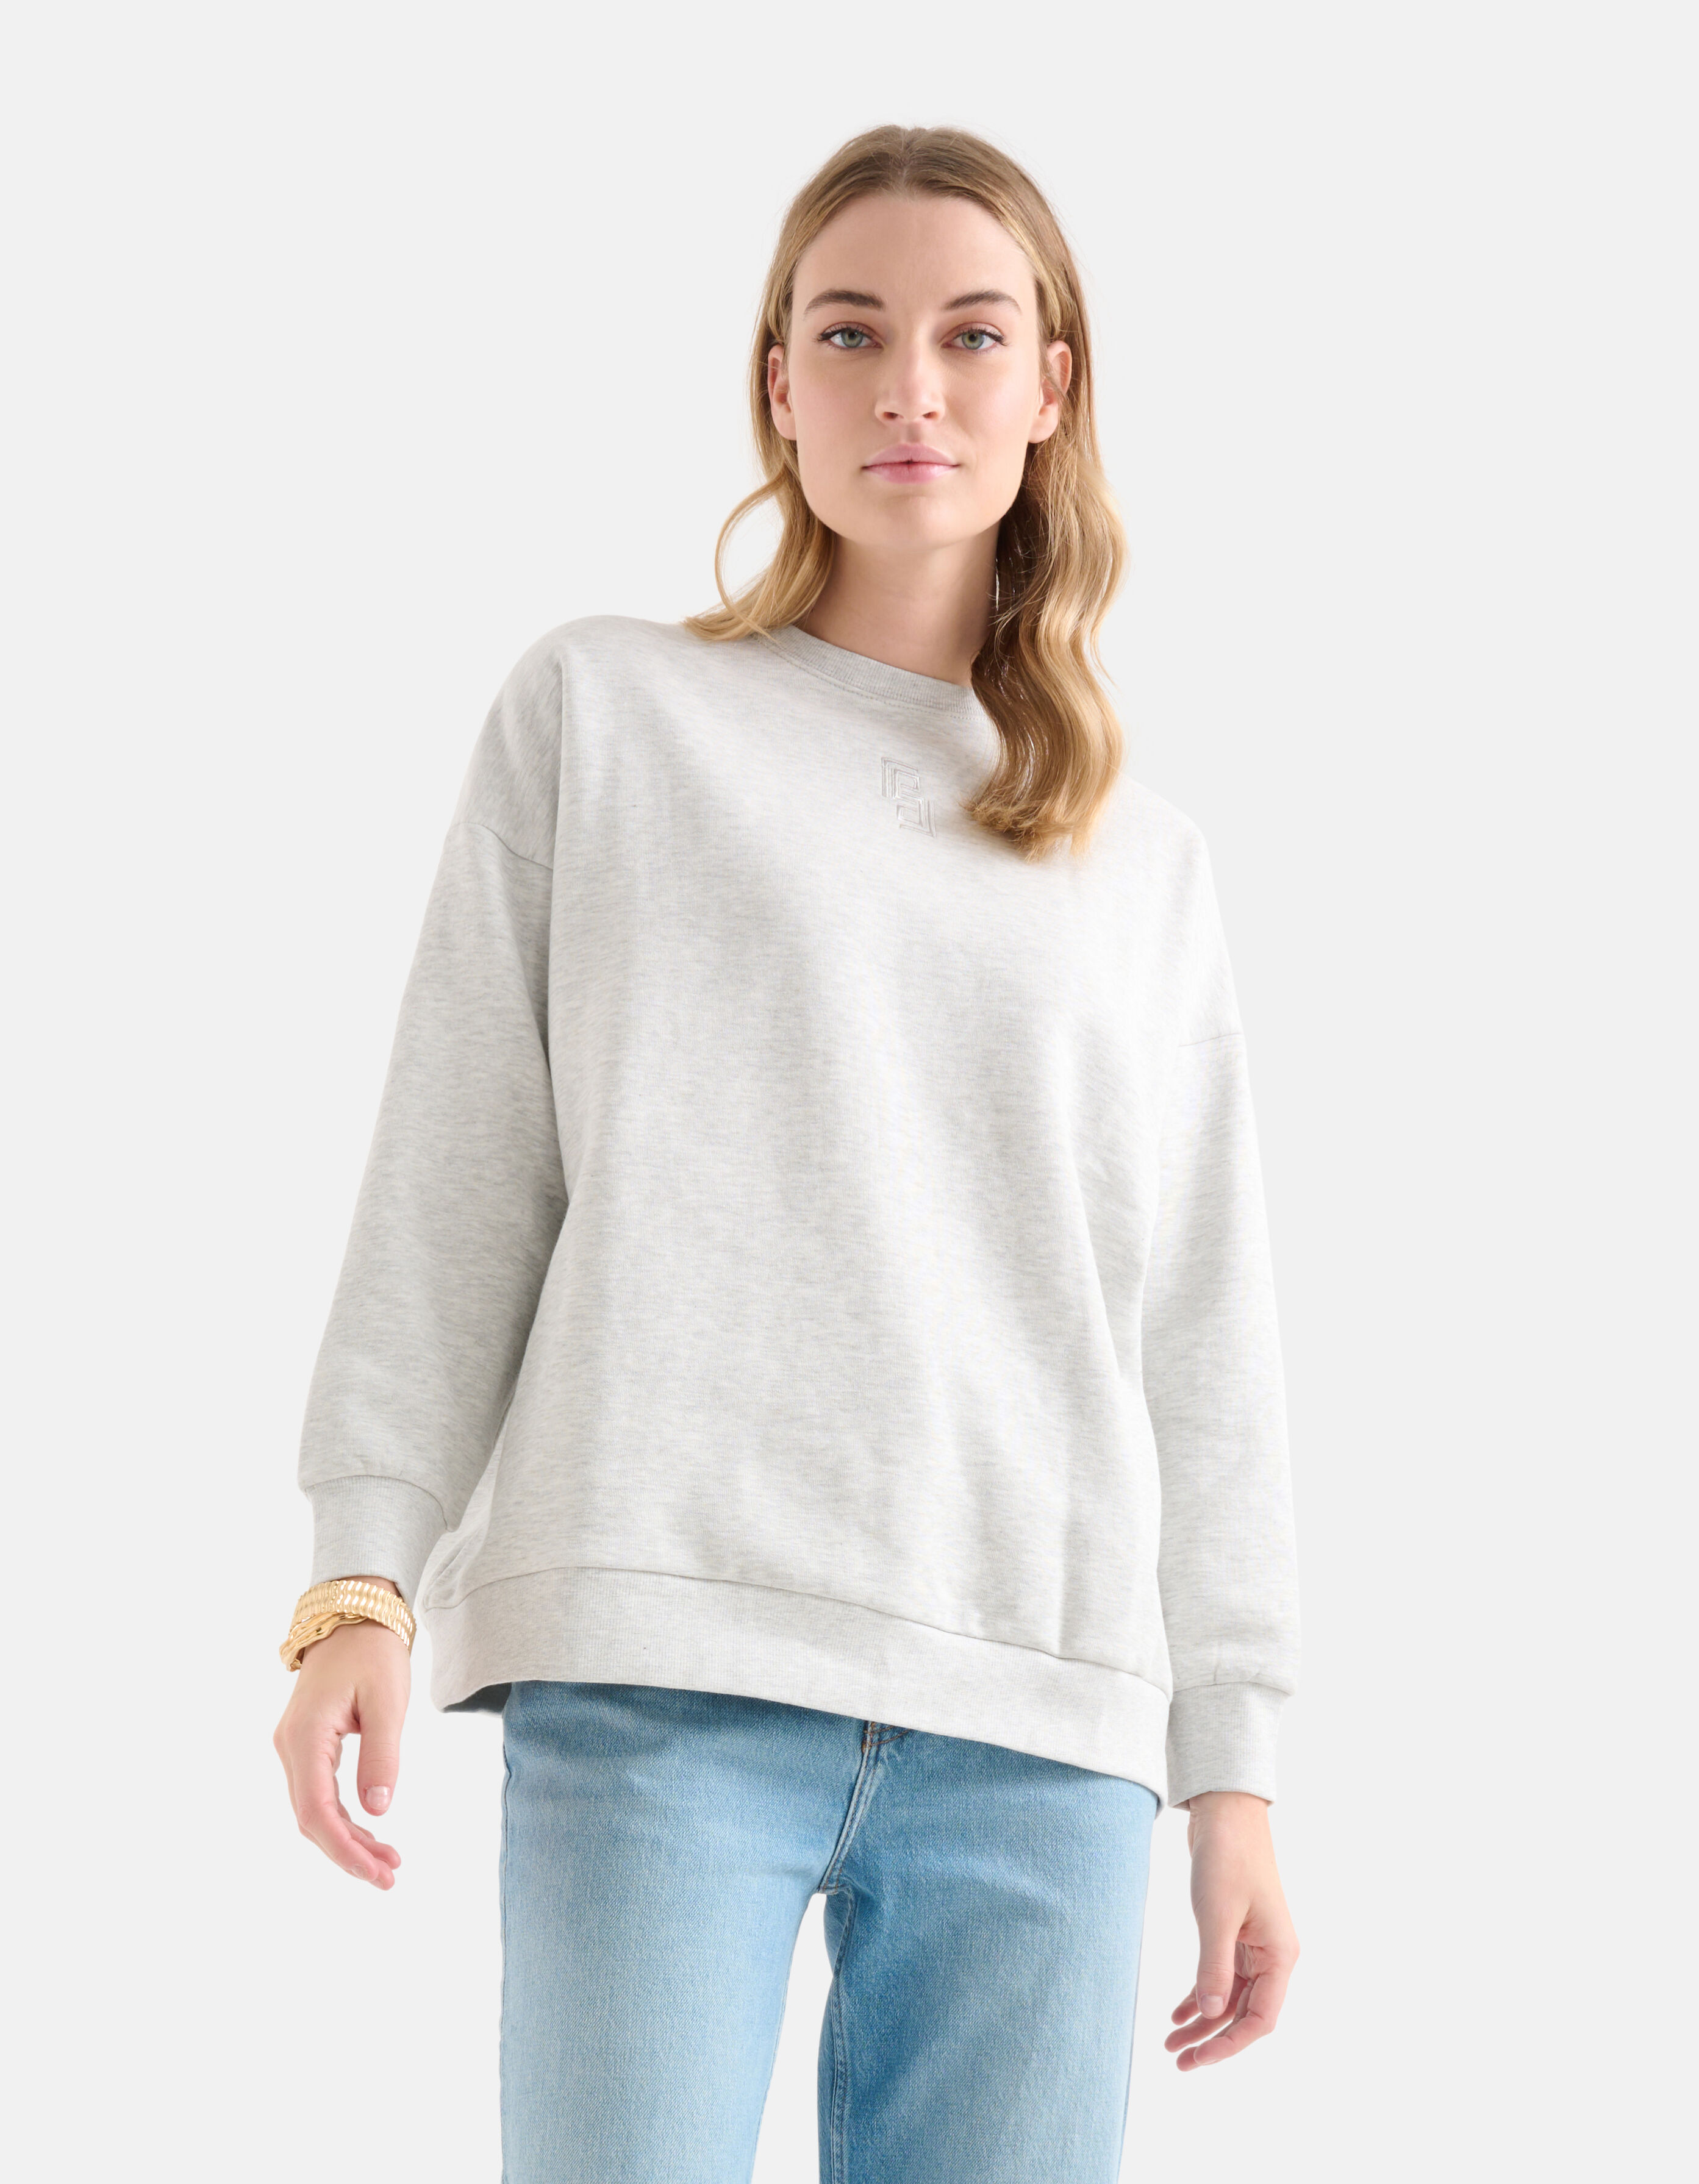 sweaters online kopen. Ontdek de | Shoeby | Koop nu | Shoeby